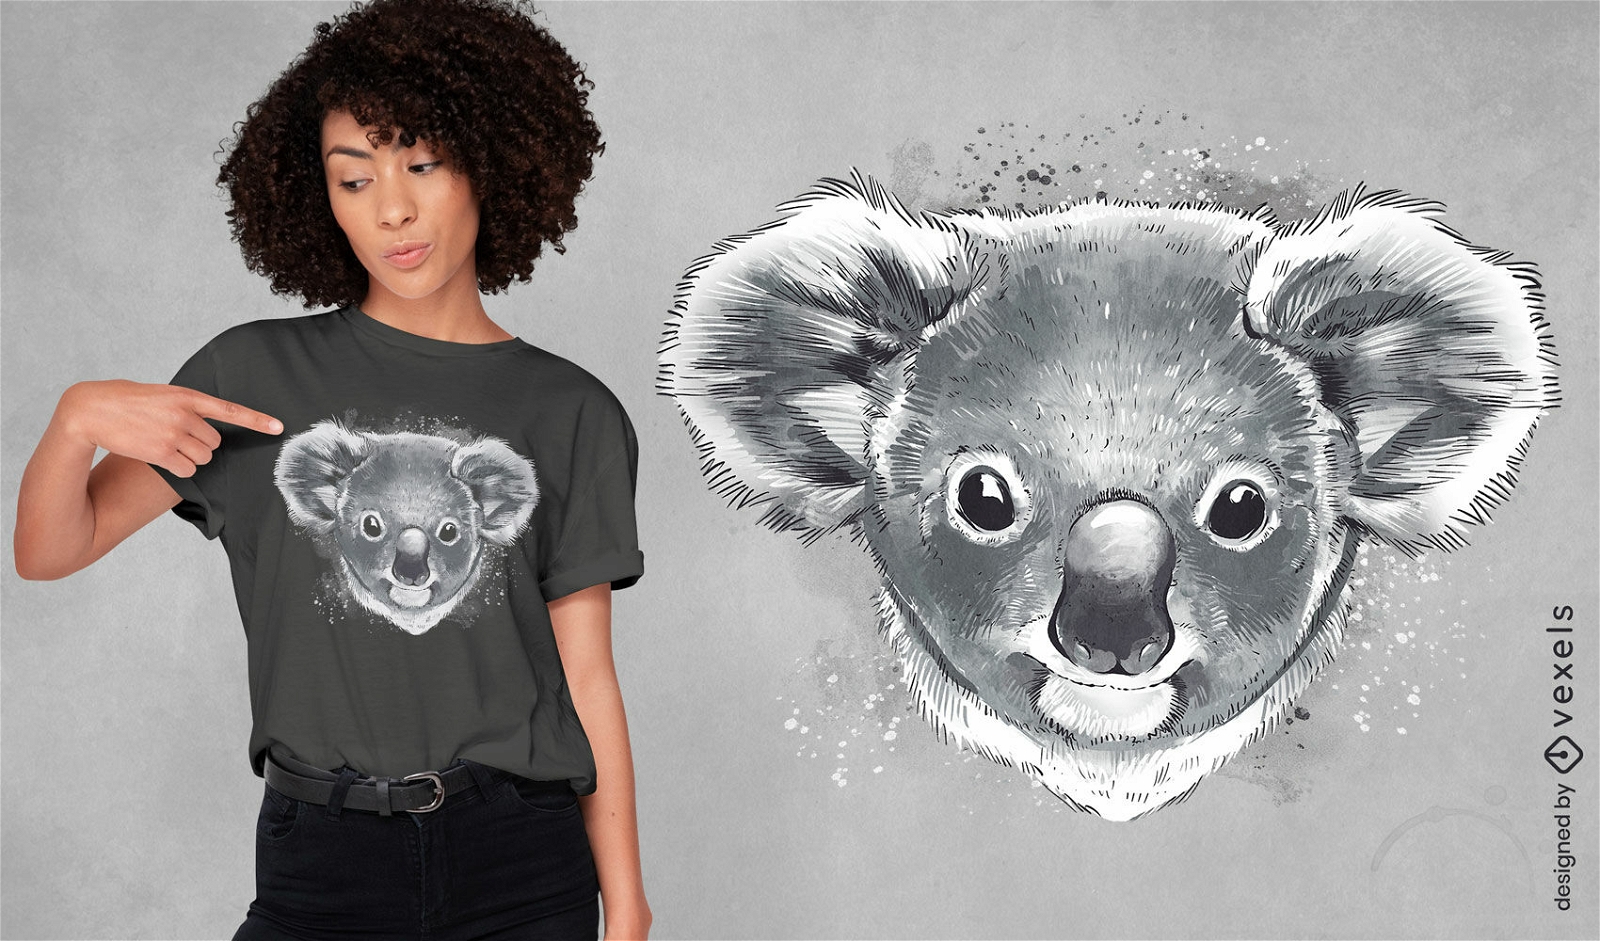 Dise?o de camiseta con cabeza de koala.